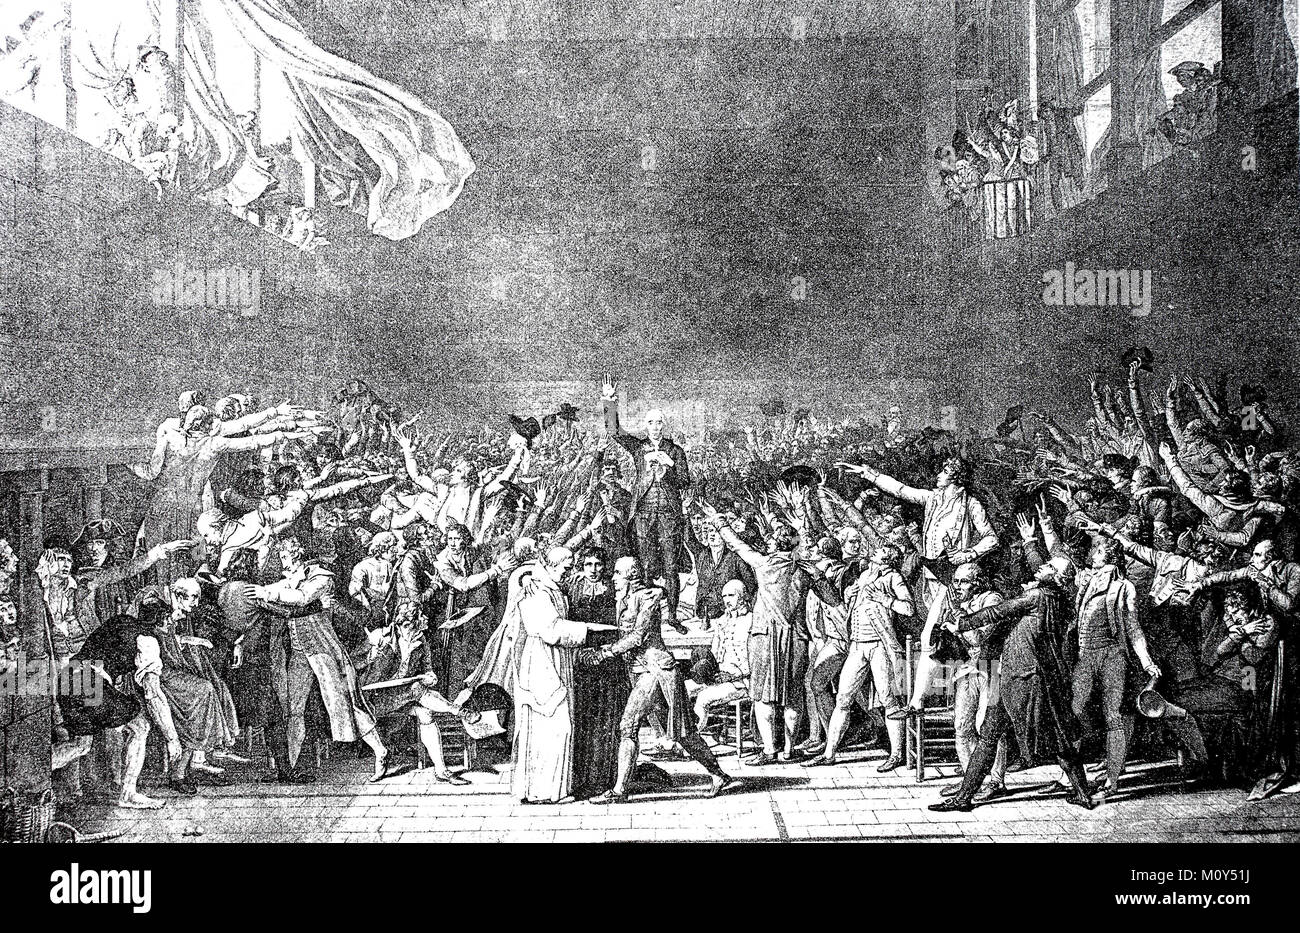 Le serment dans la salle de bal du 20 juin 1789, Bailly lit le serment que les membres du Tiers État de la États Généraux à Versailles juré de ne pas se disperser avant de donner à la France une constitution, l'amélioration d'un fichier numérique d'origine du 19 siècle. Banque D'Images